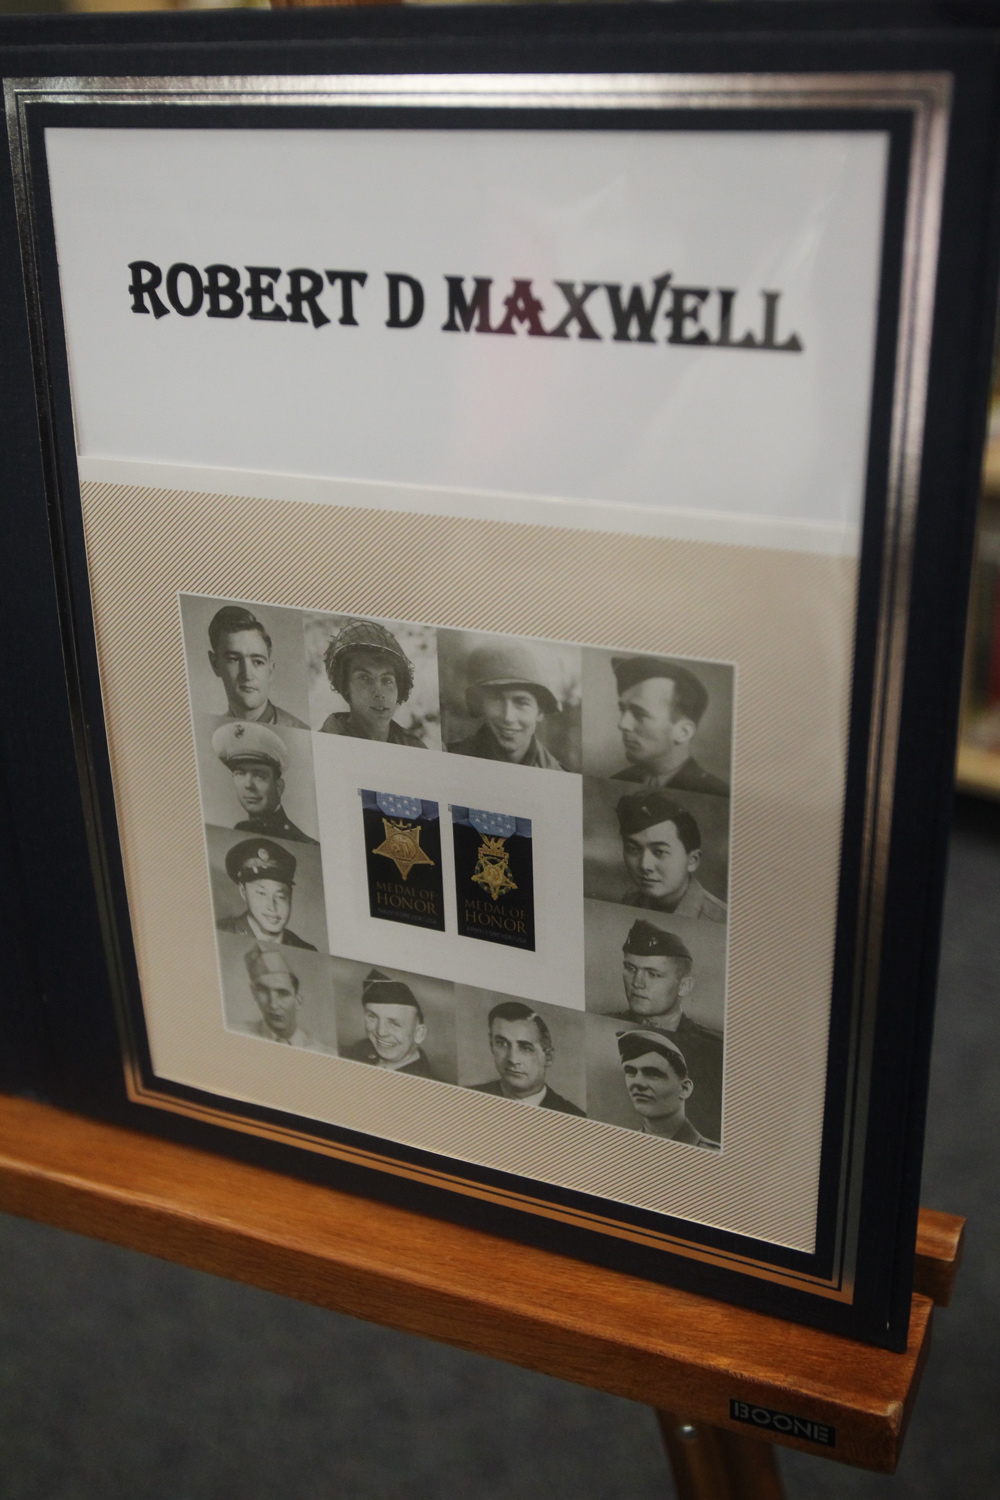 A plaque for Bob Maxwell, a Medal of Honor recipient.